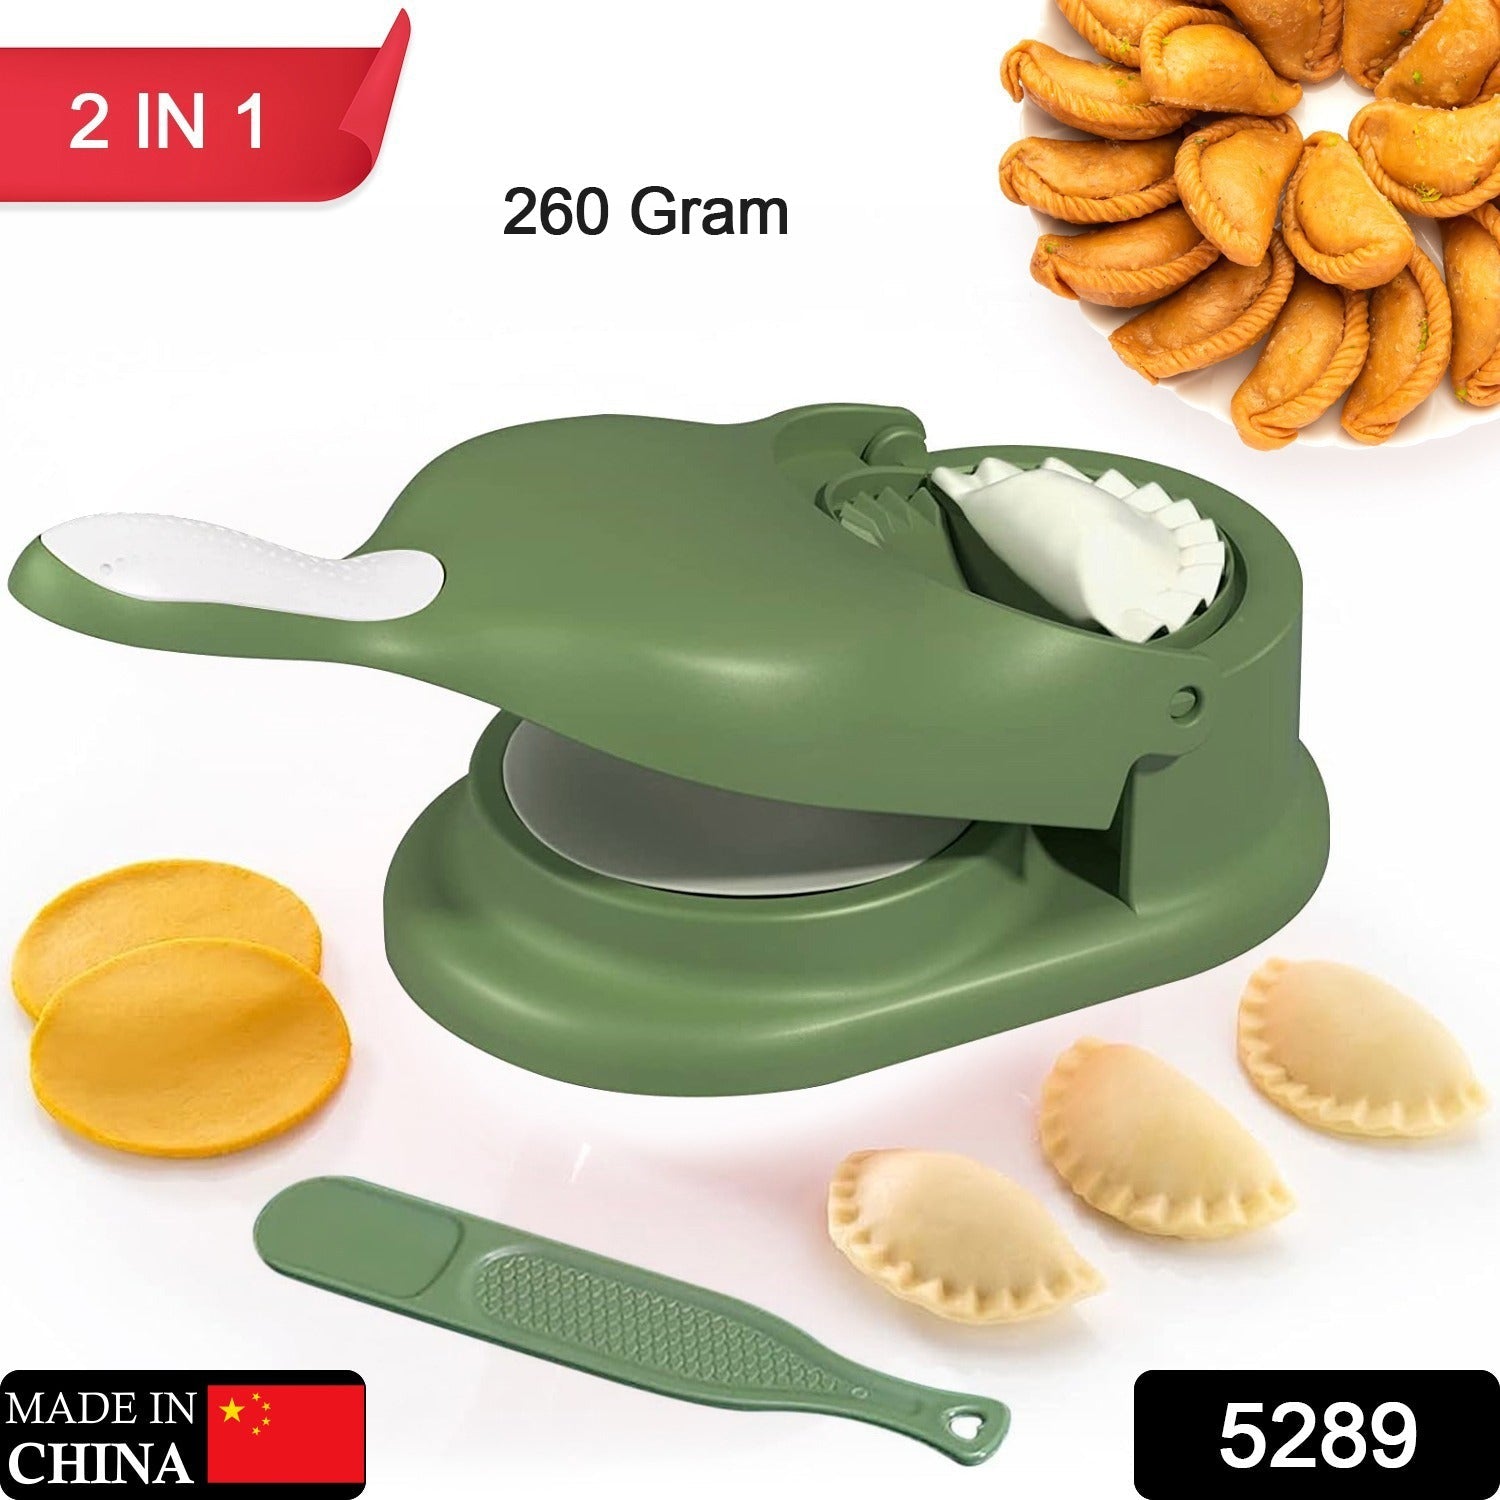 5289 Dumpling Skin Press Mould for Gujiya , Ghughra , Momos Making, 2 in 1 Dumpling Maker Mould Machine, Kitchen Dumpling Making Tool 